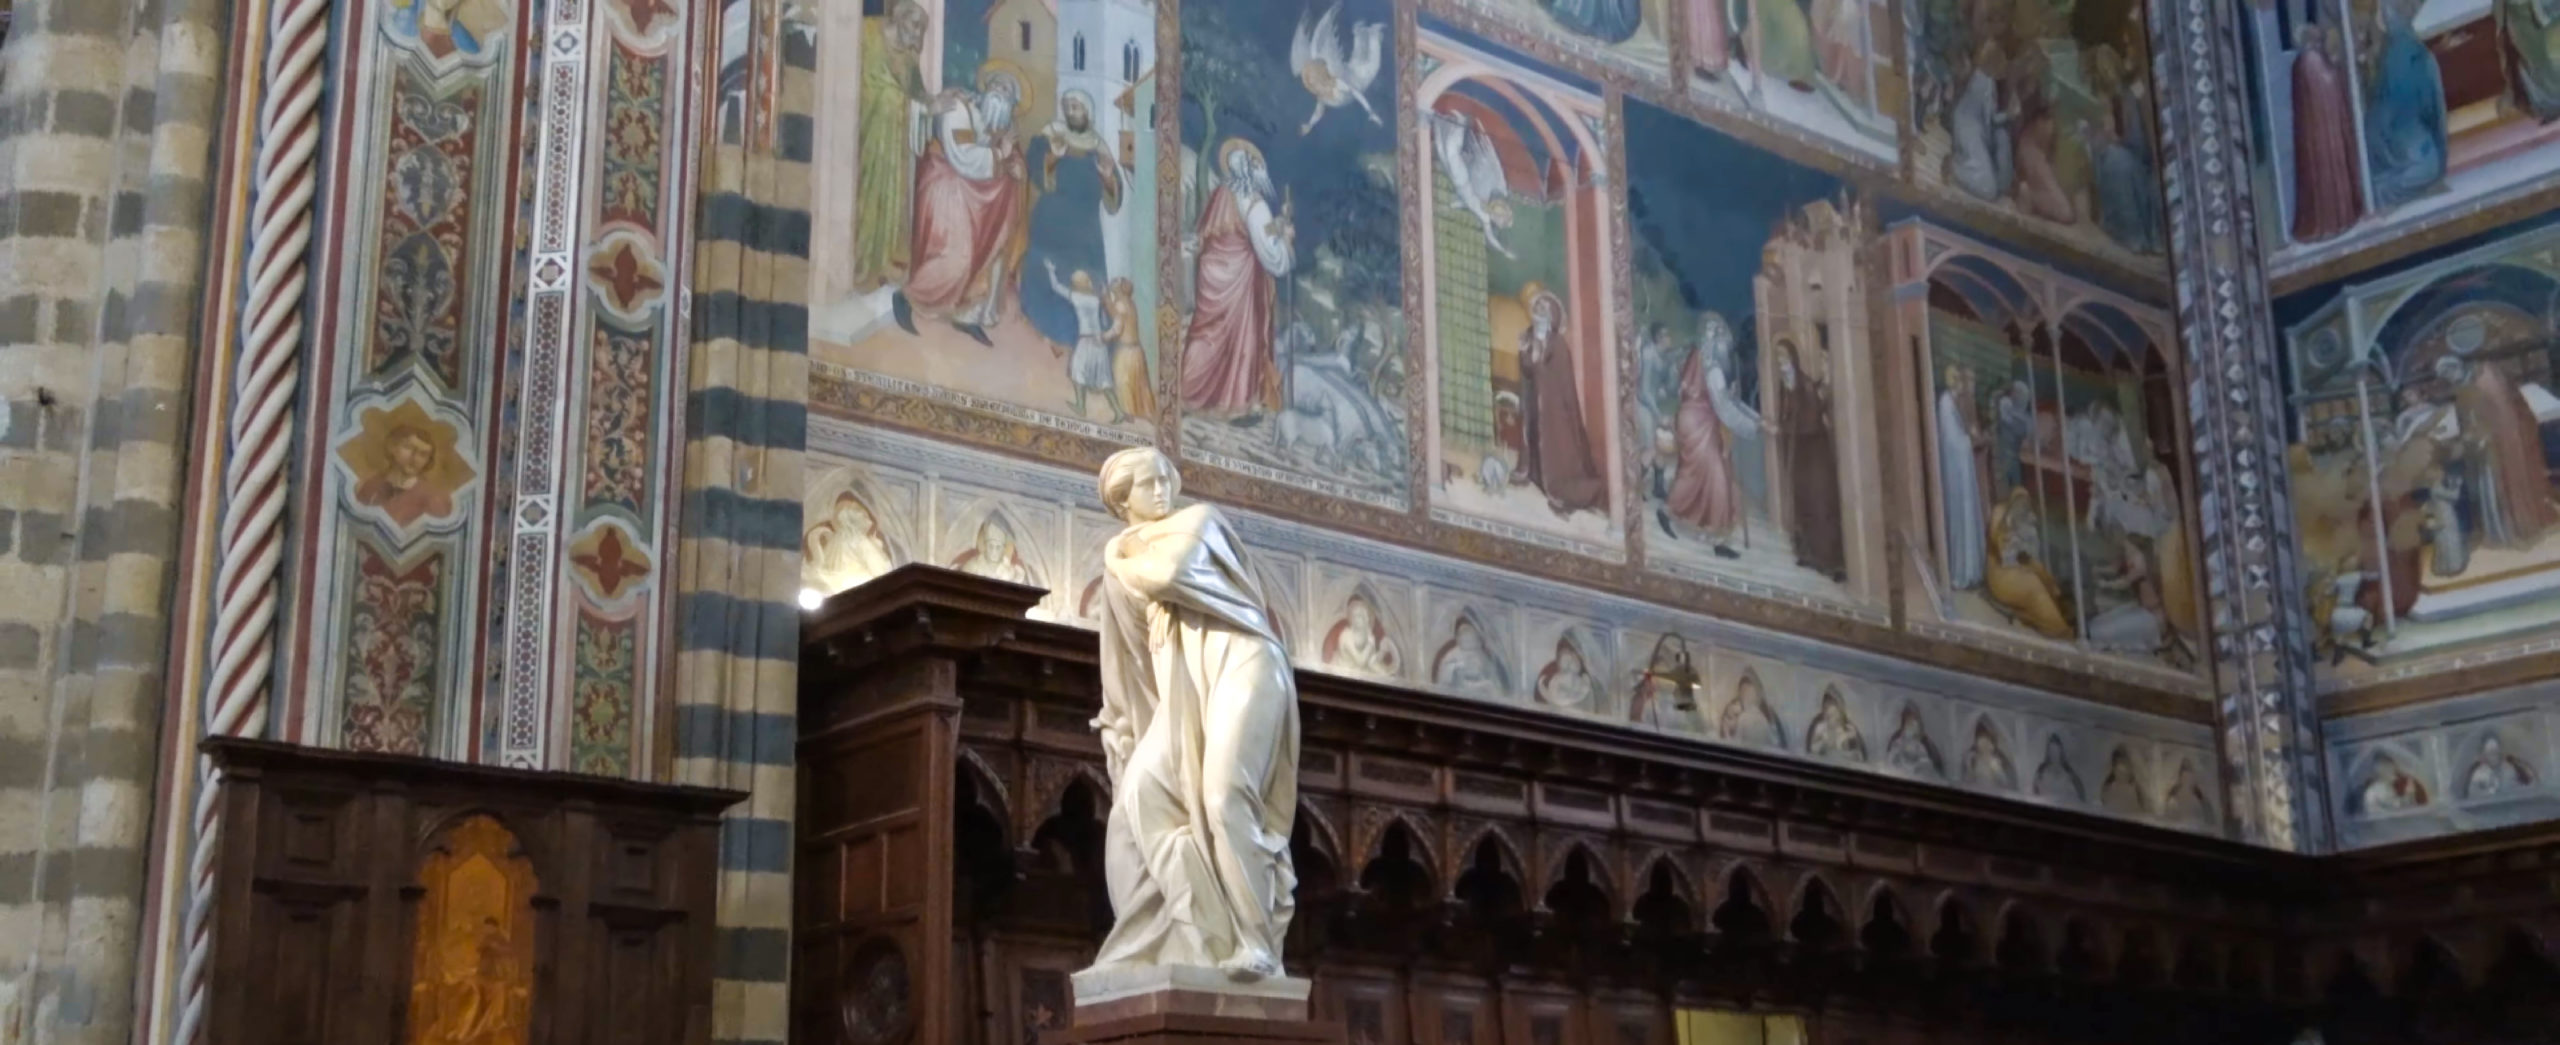 Orvieto - Scorcio dell'abside del Duomo